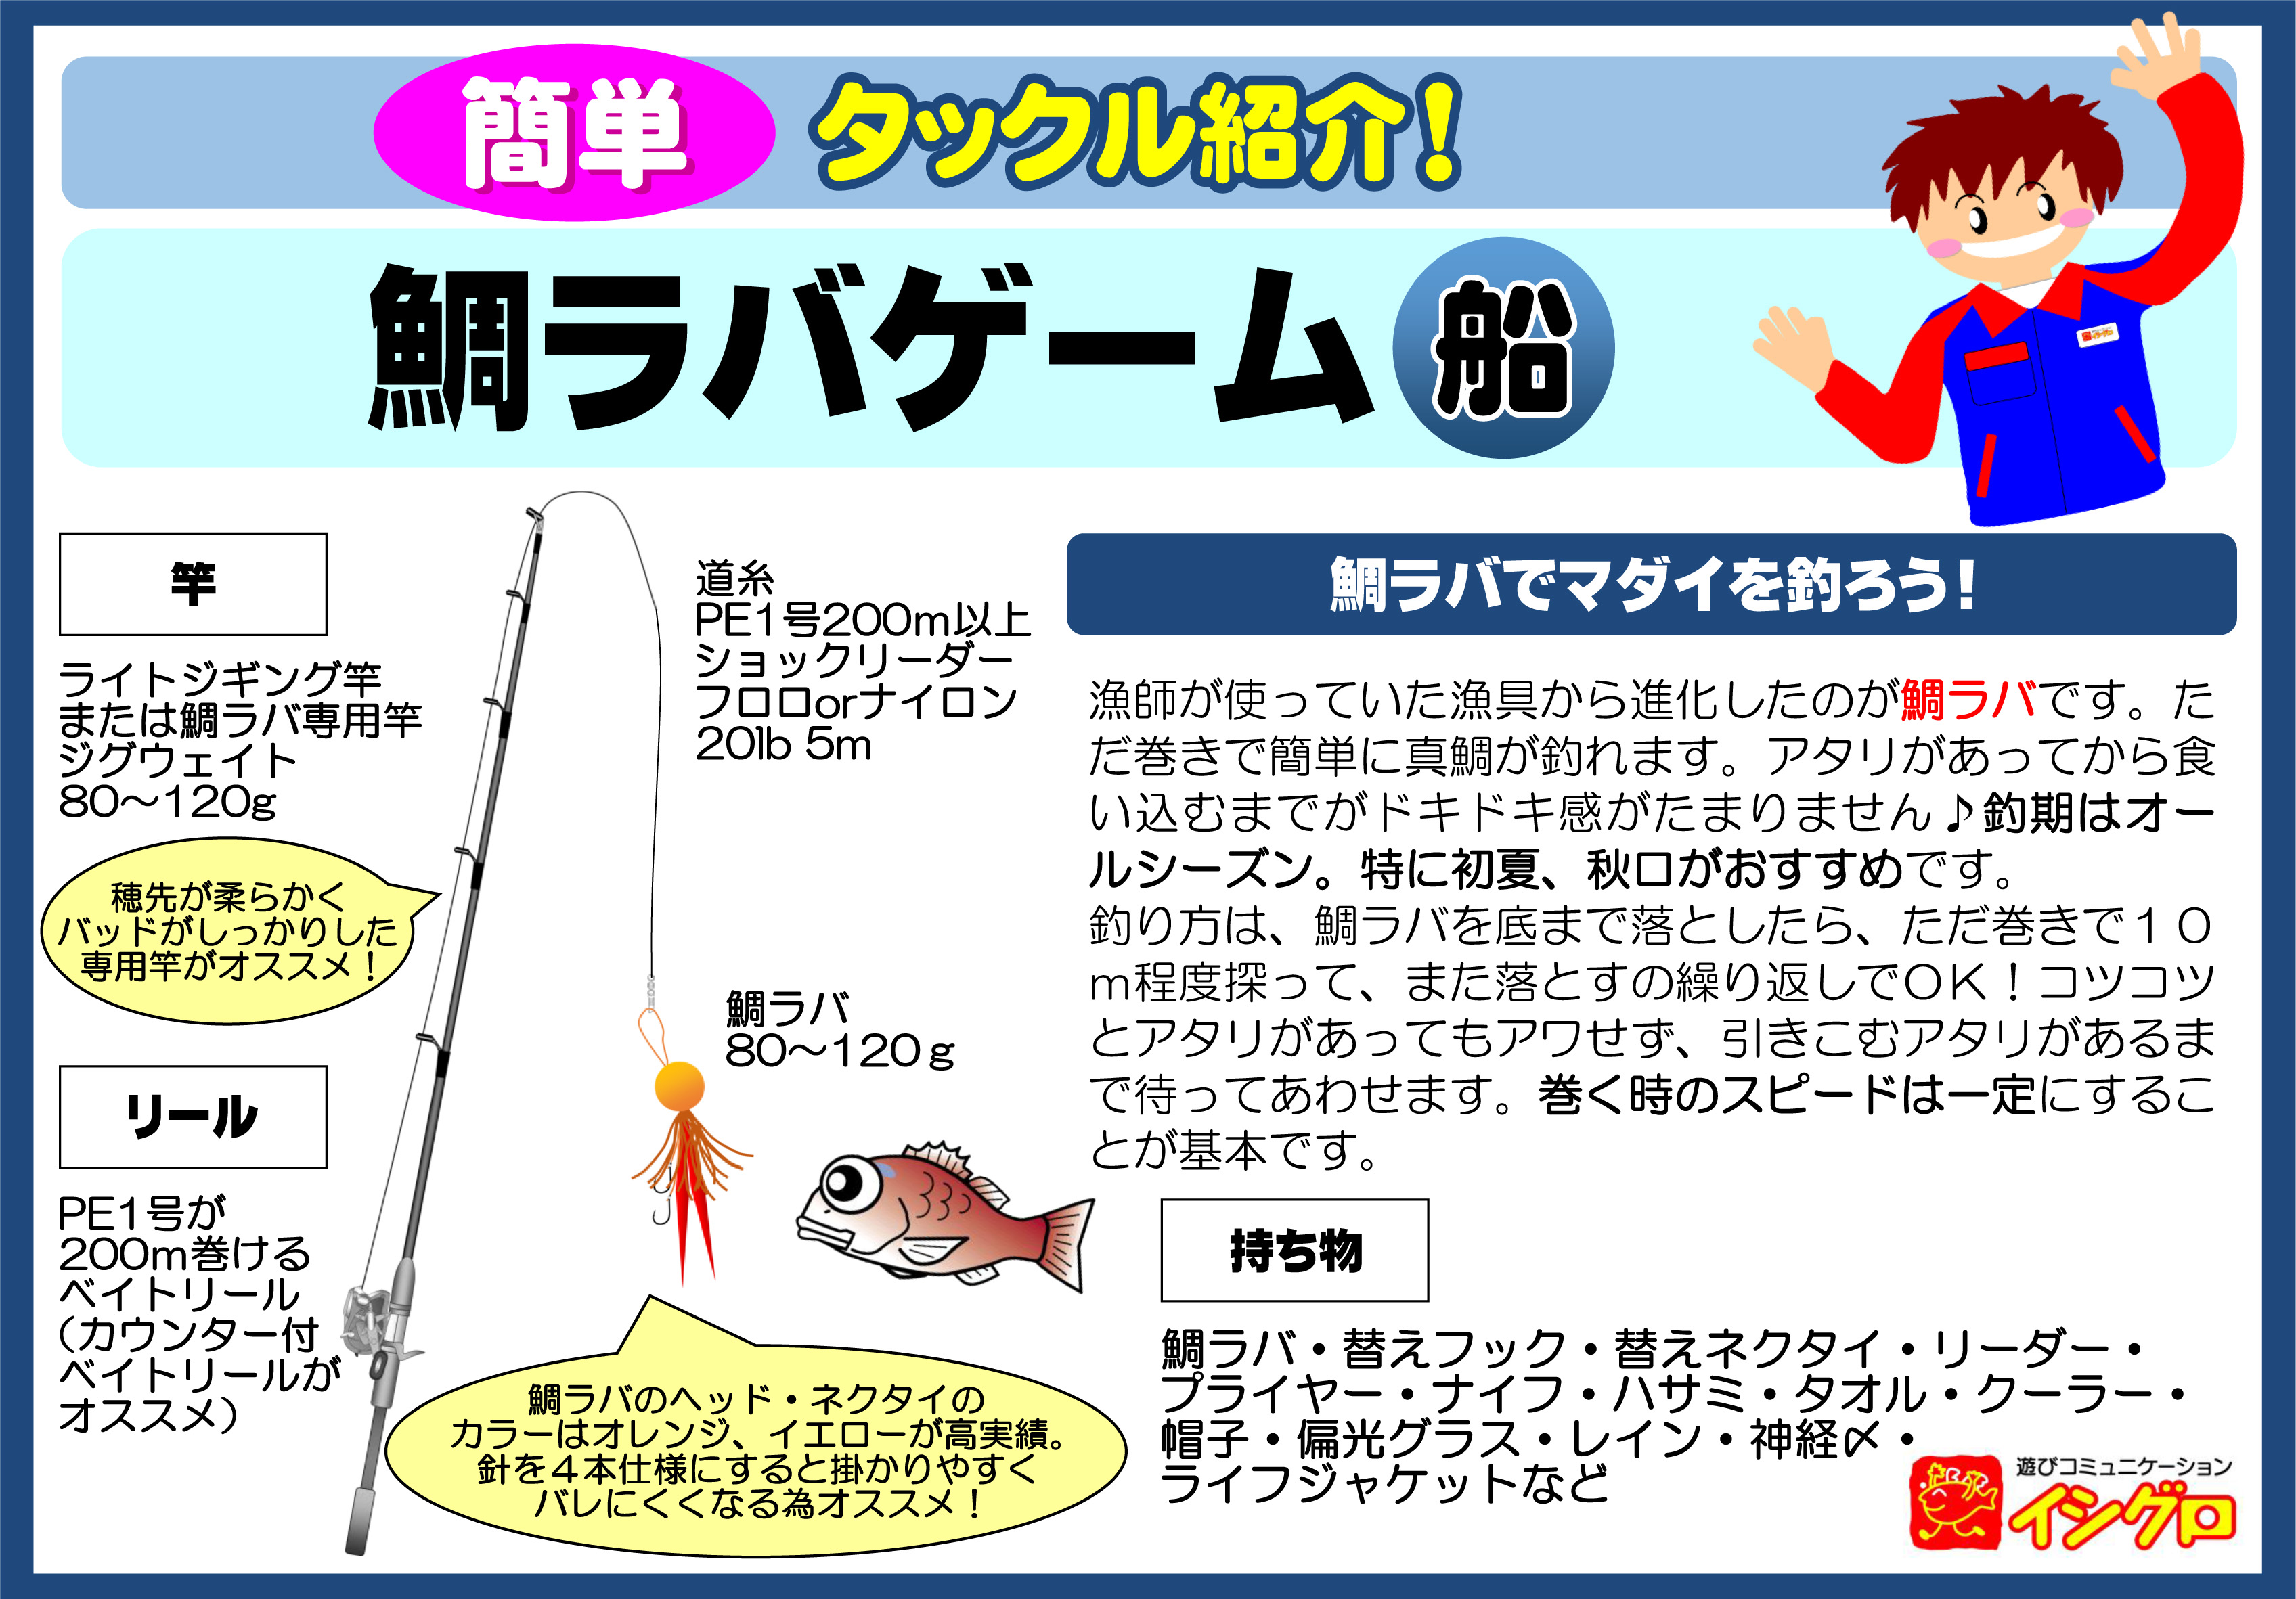 選択した画像 錦魚 釣り方 折り紙 動物